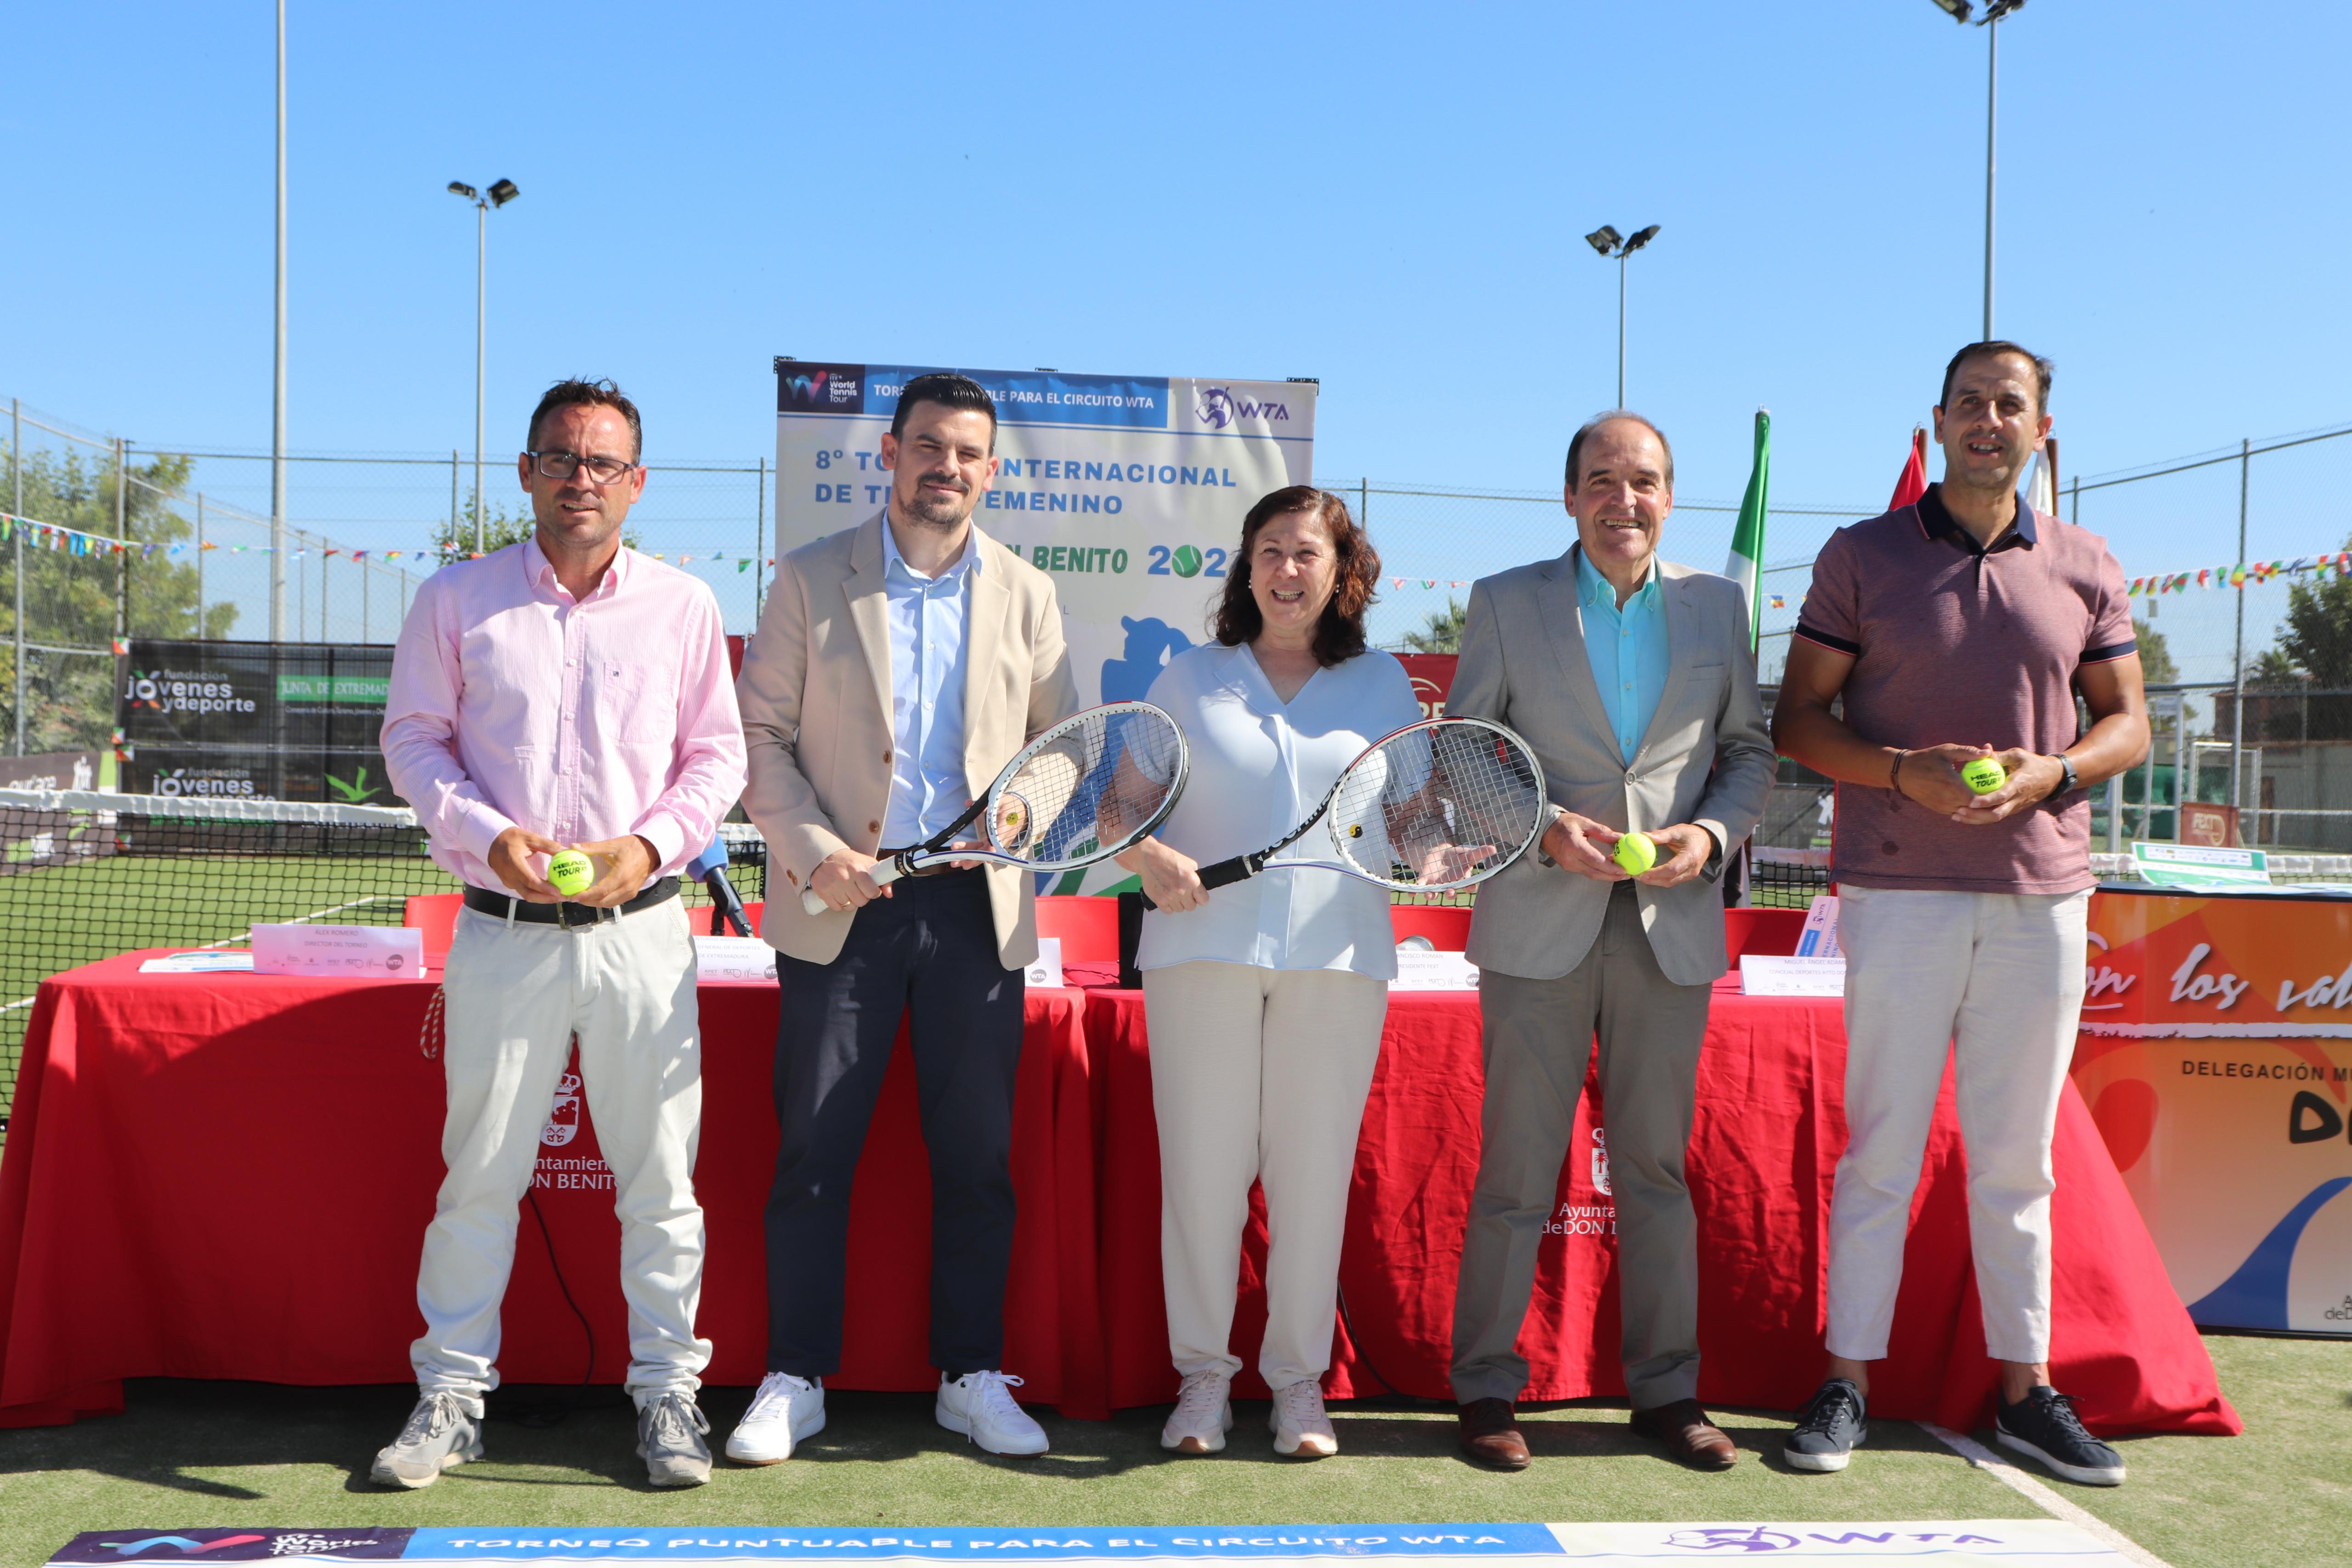 Image 9 of article La Junta de Extremadura apoya el VIII Torneo Internacional de Tenis Femenino que se celebrará en Don Benito del 6 al 14 de julio